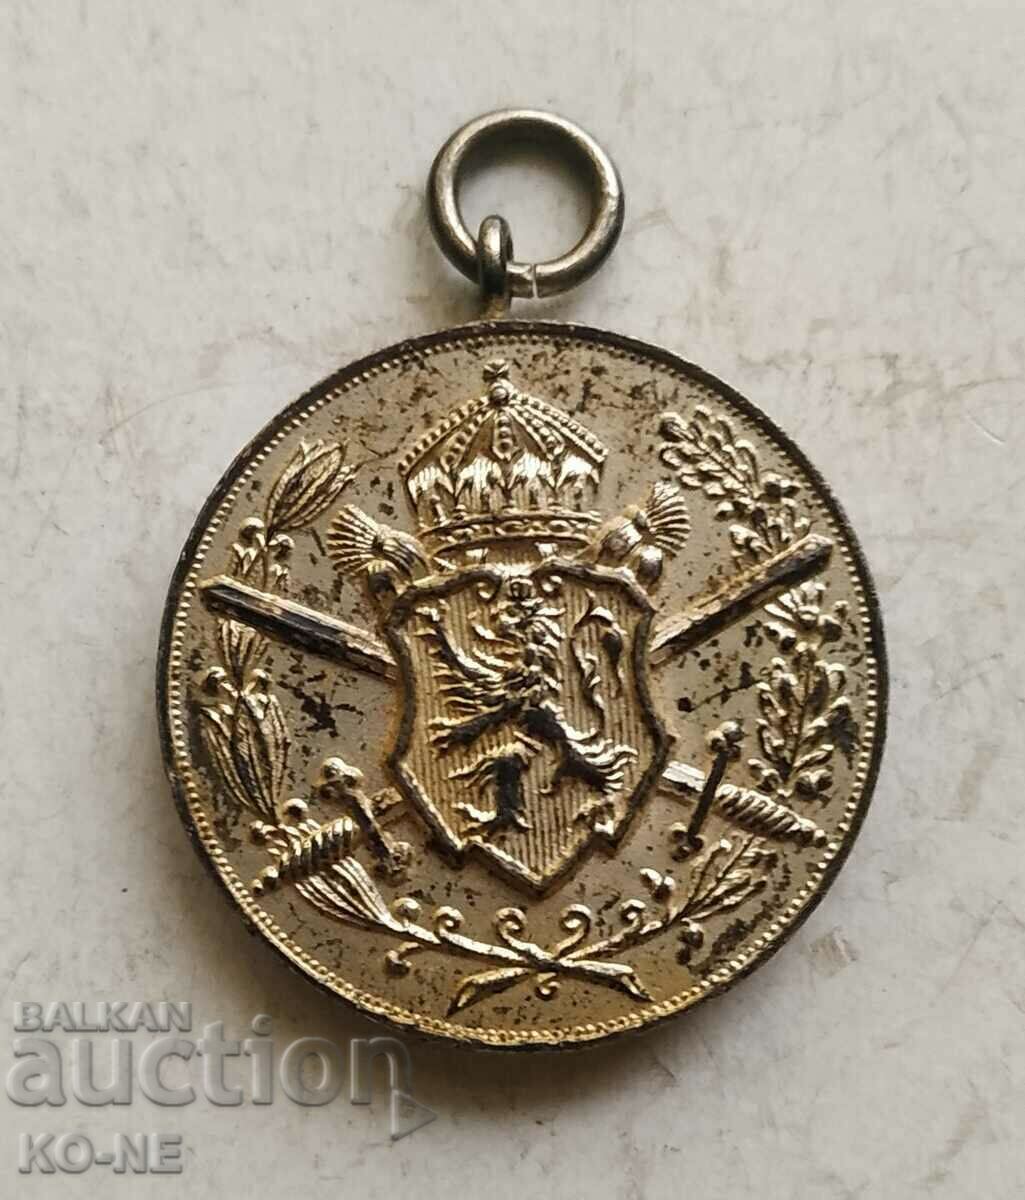 Μετάλλιο συμμετοχής στον Βαλκανικό Πόλεμο 1912-13